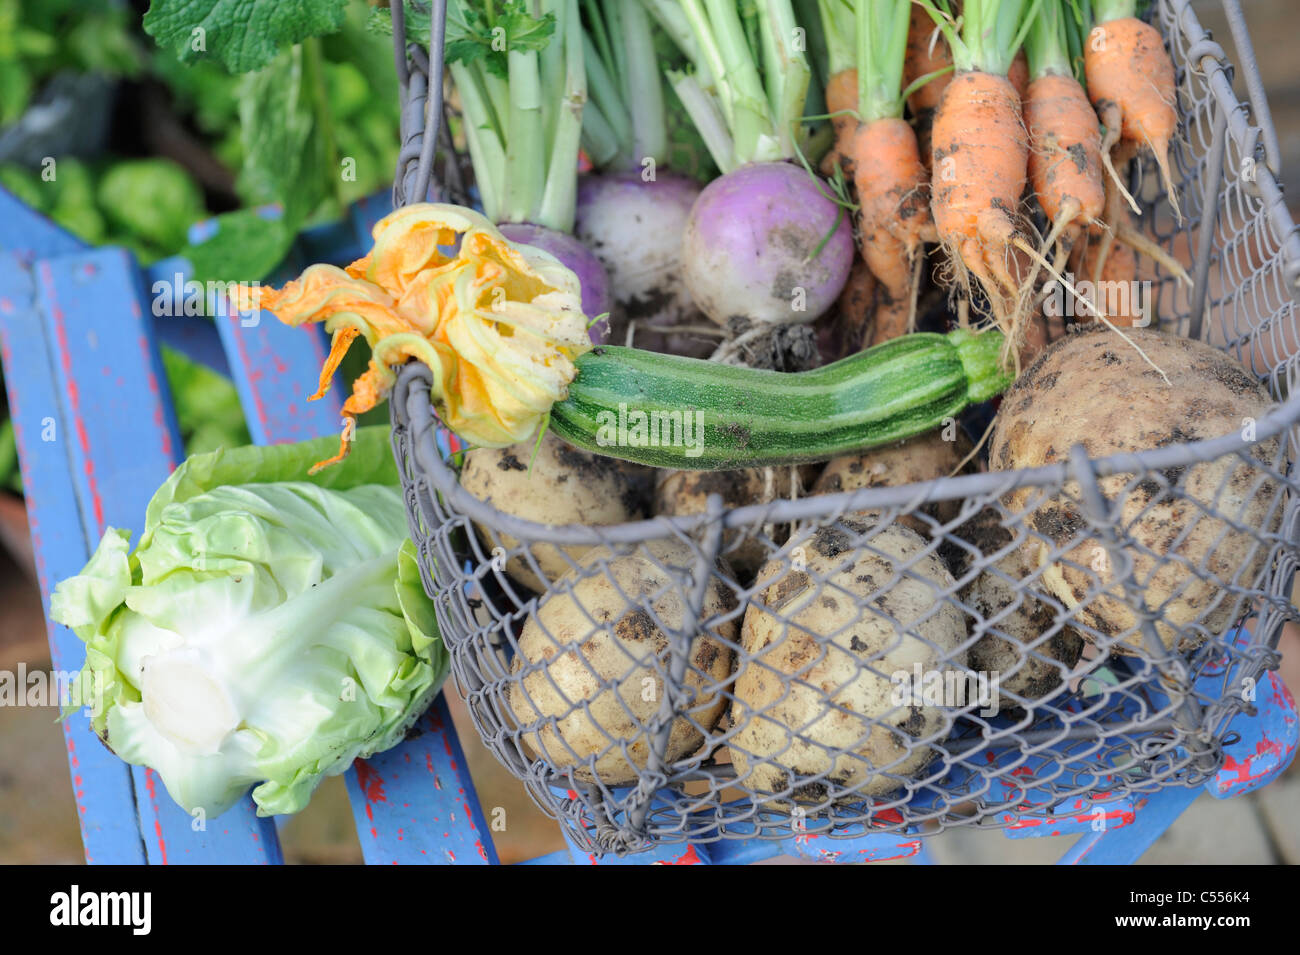 Sommergarten produzieren in einem Draht Trug, Kohl, Karotten, weiße Rüben, Kartoffeln und Zucchini, Norfolk, England, Juni Stockfoto